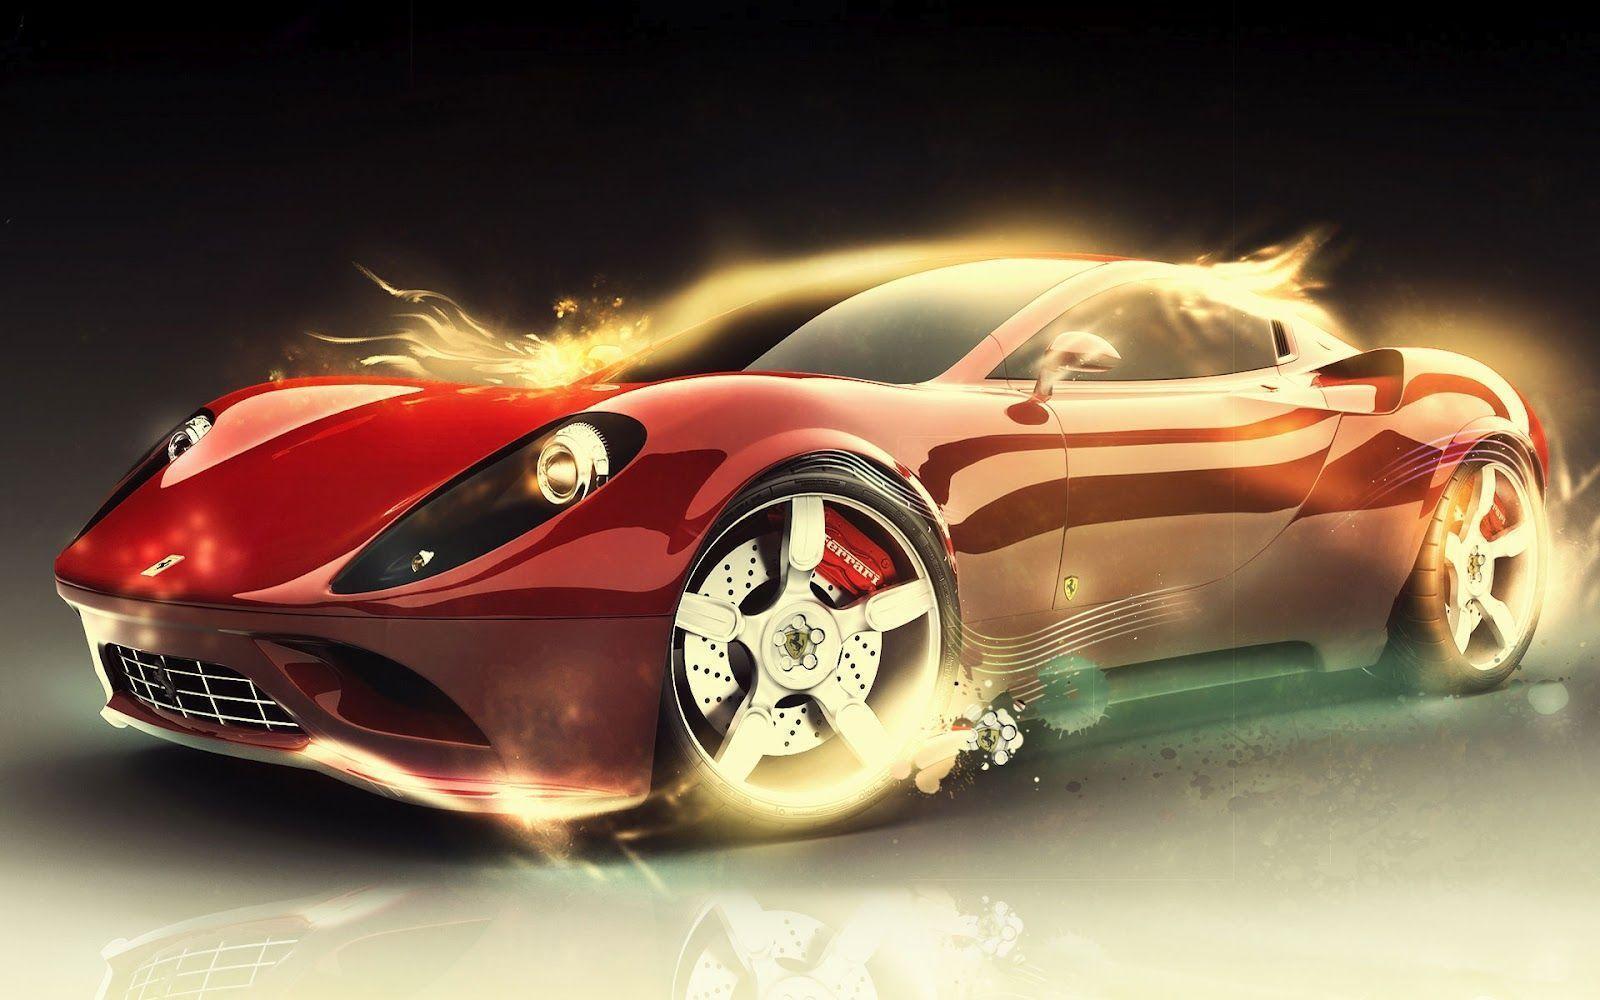 Ferrari cars wallpaper for desktop (8) Online